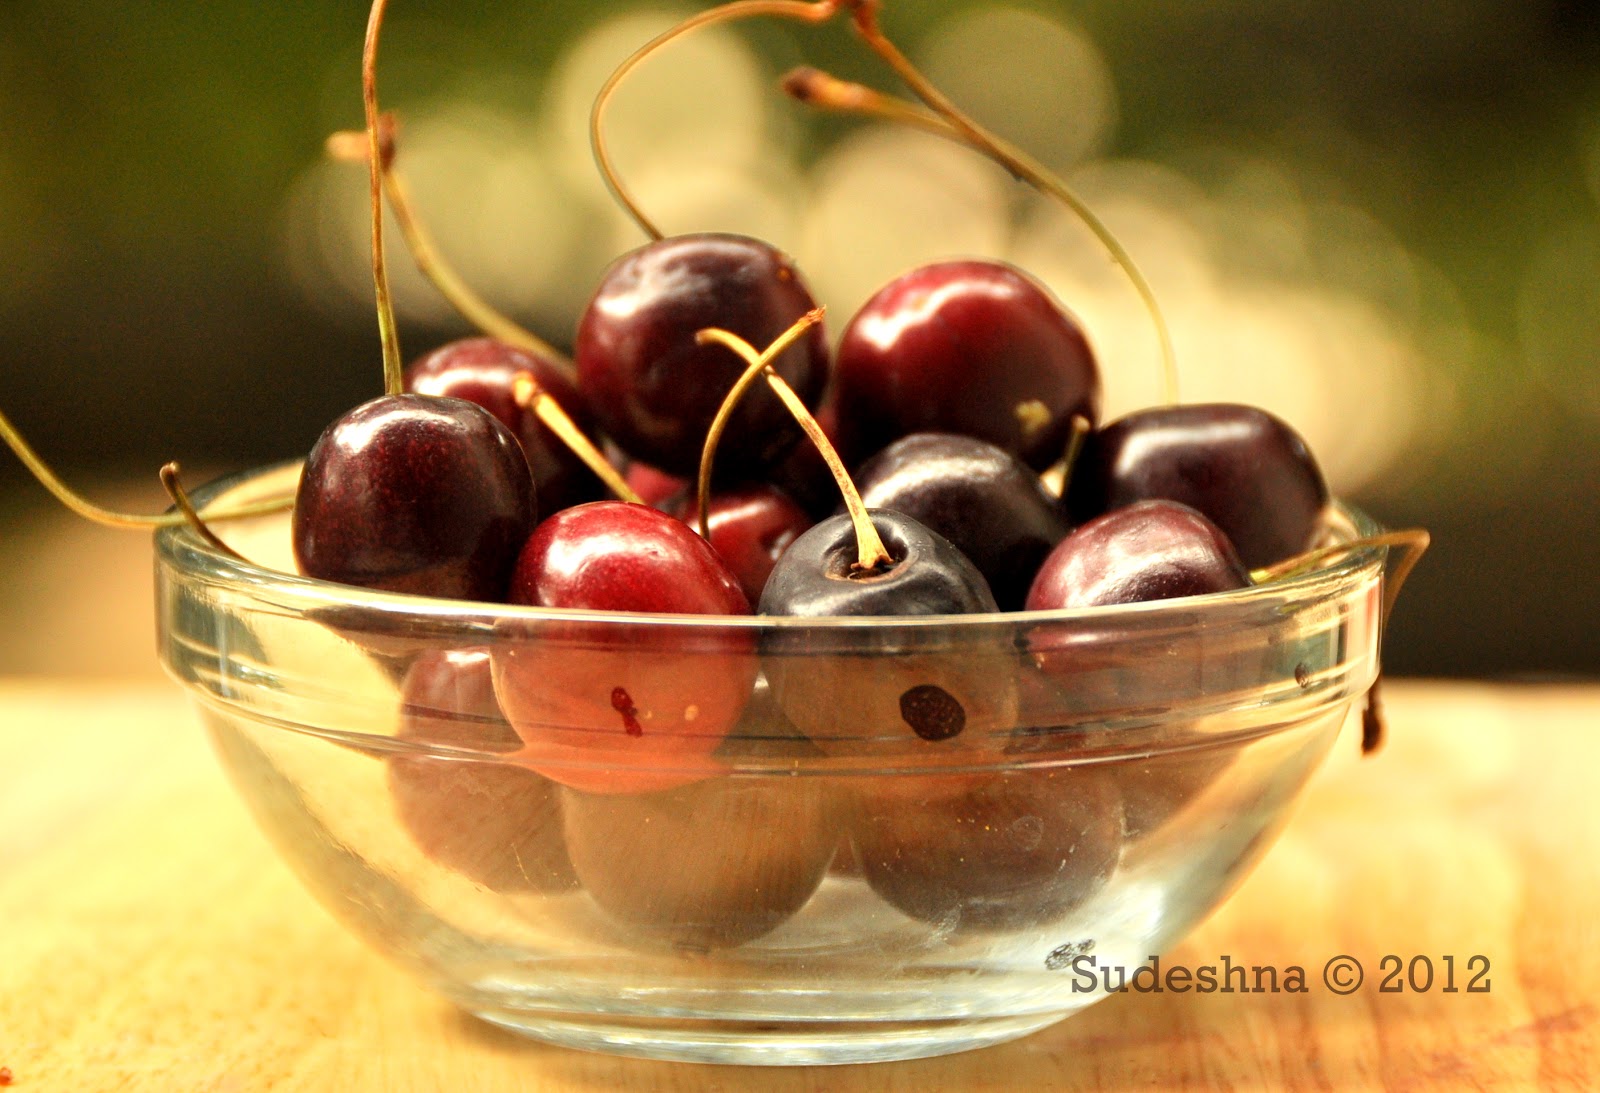 File:Cherries in bowl.jpg